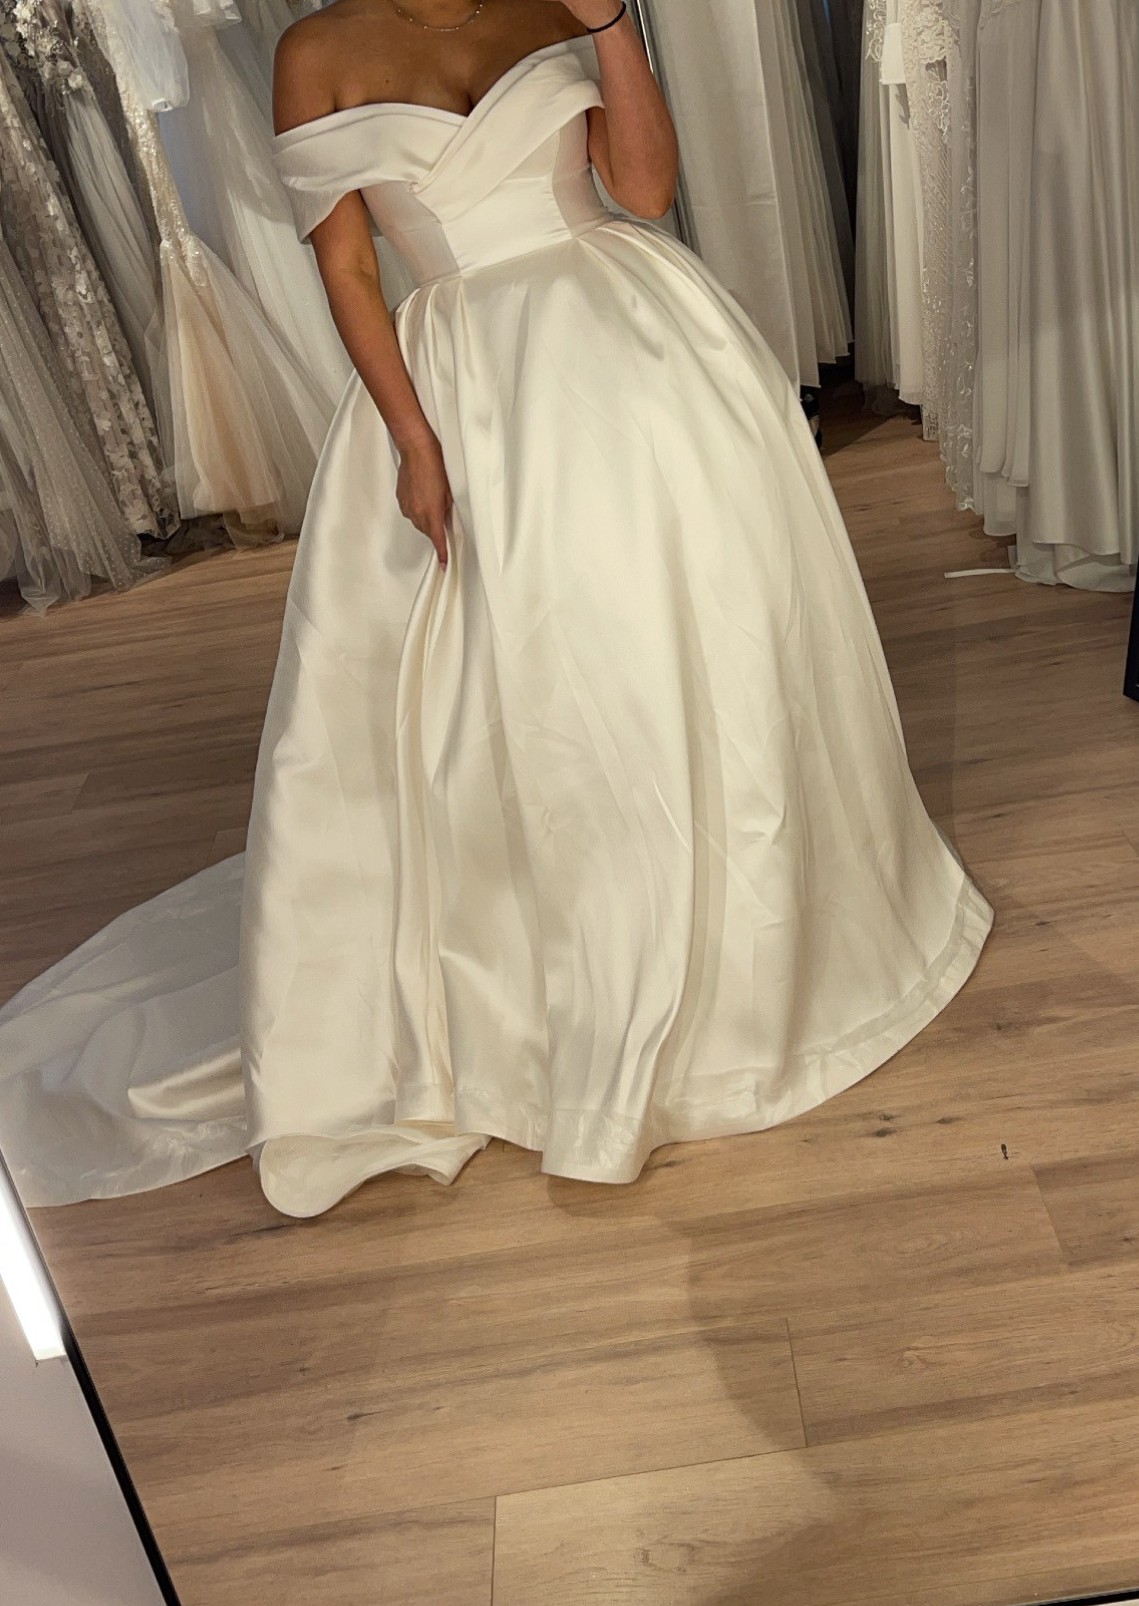 Milla Nova Used Wedding Dress   Stillwhite